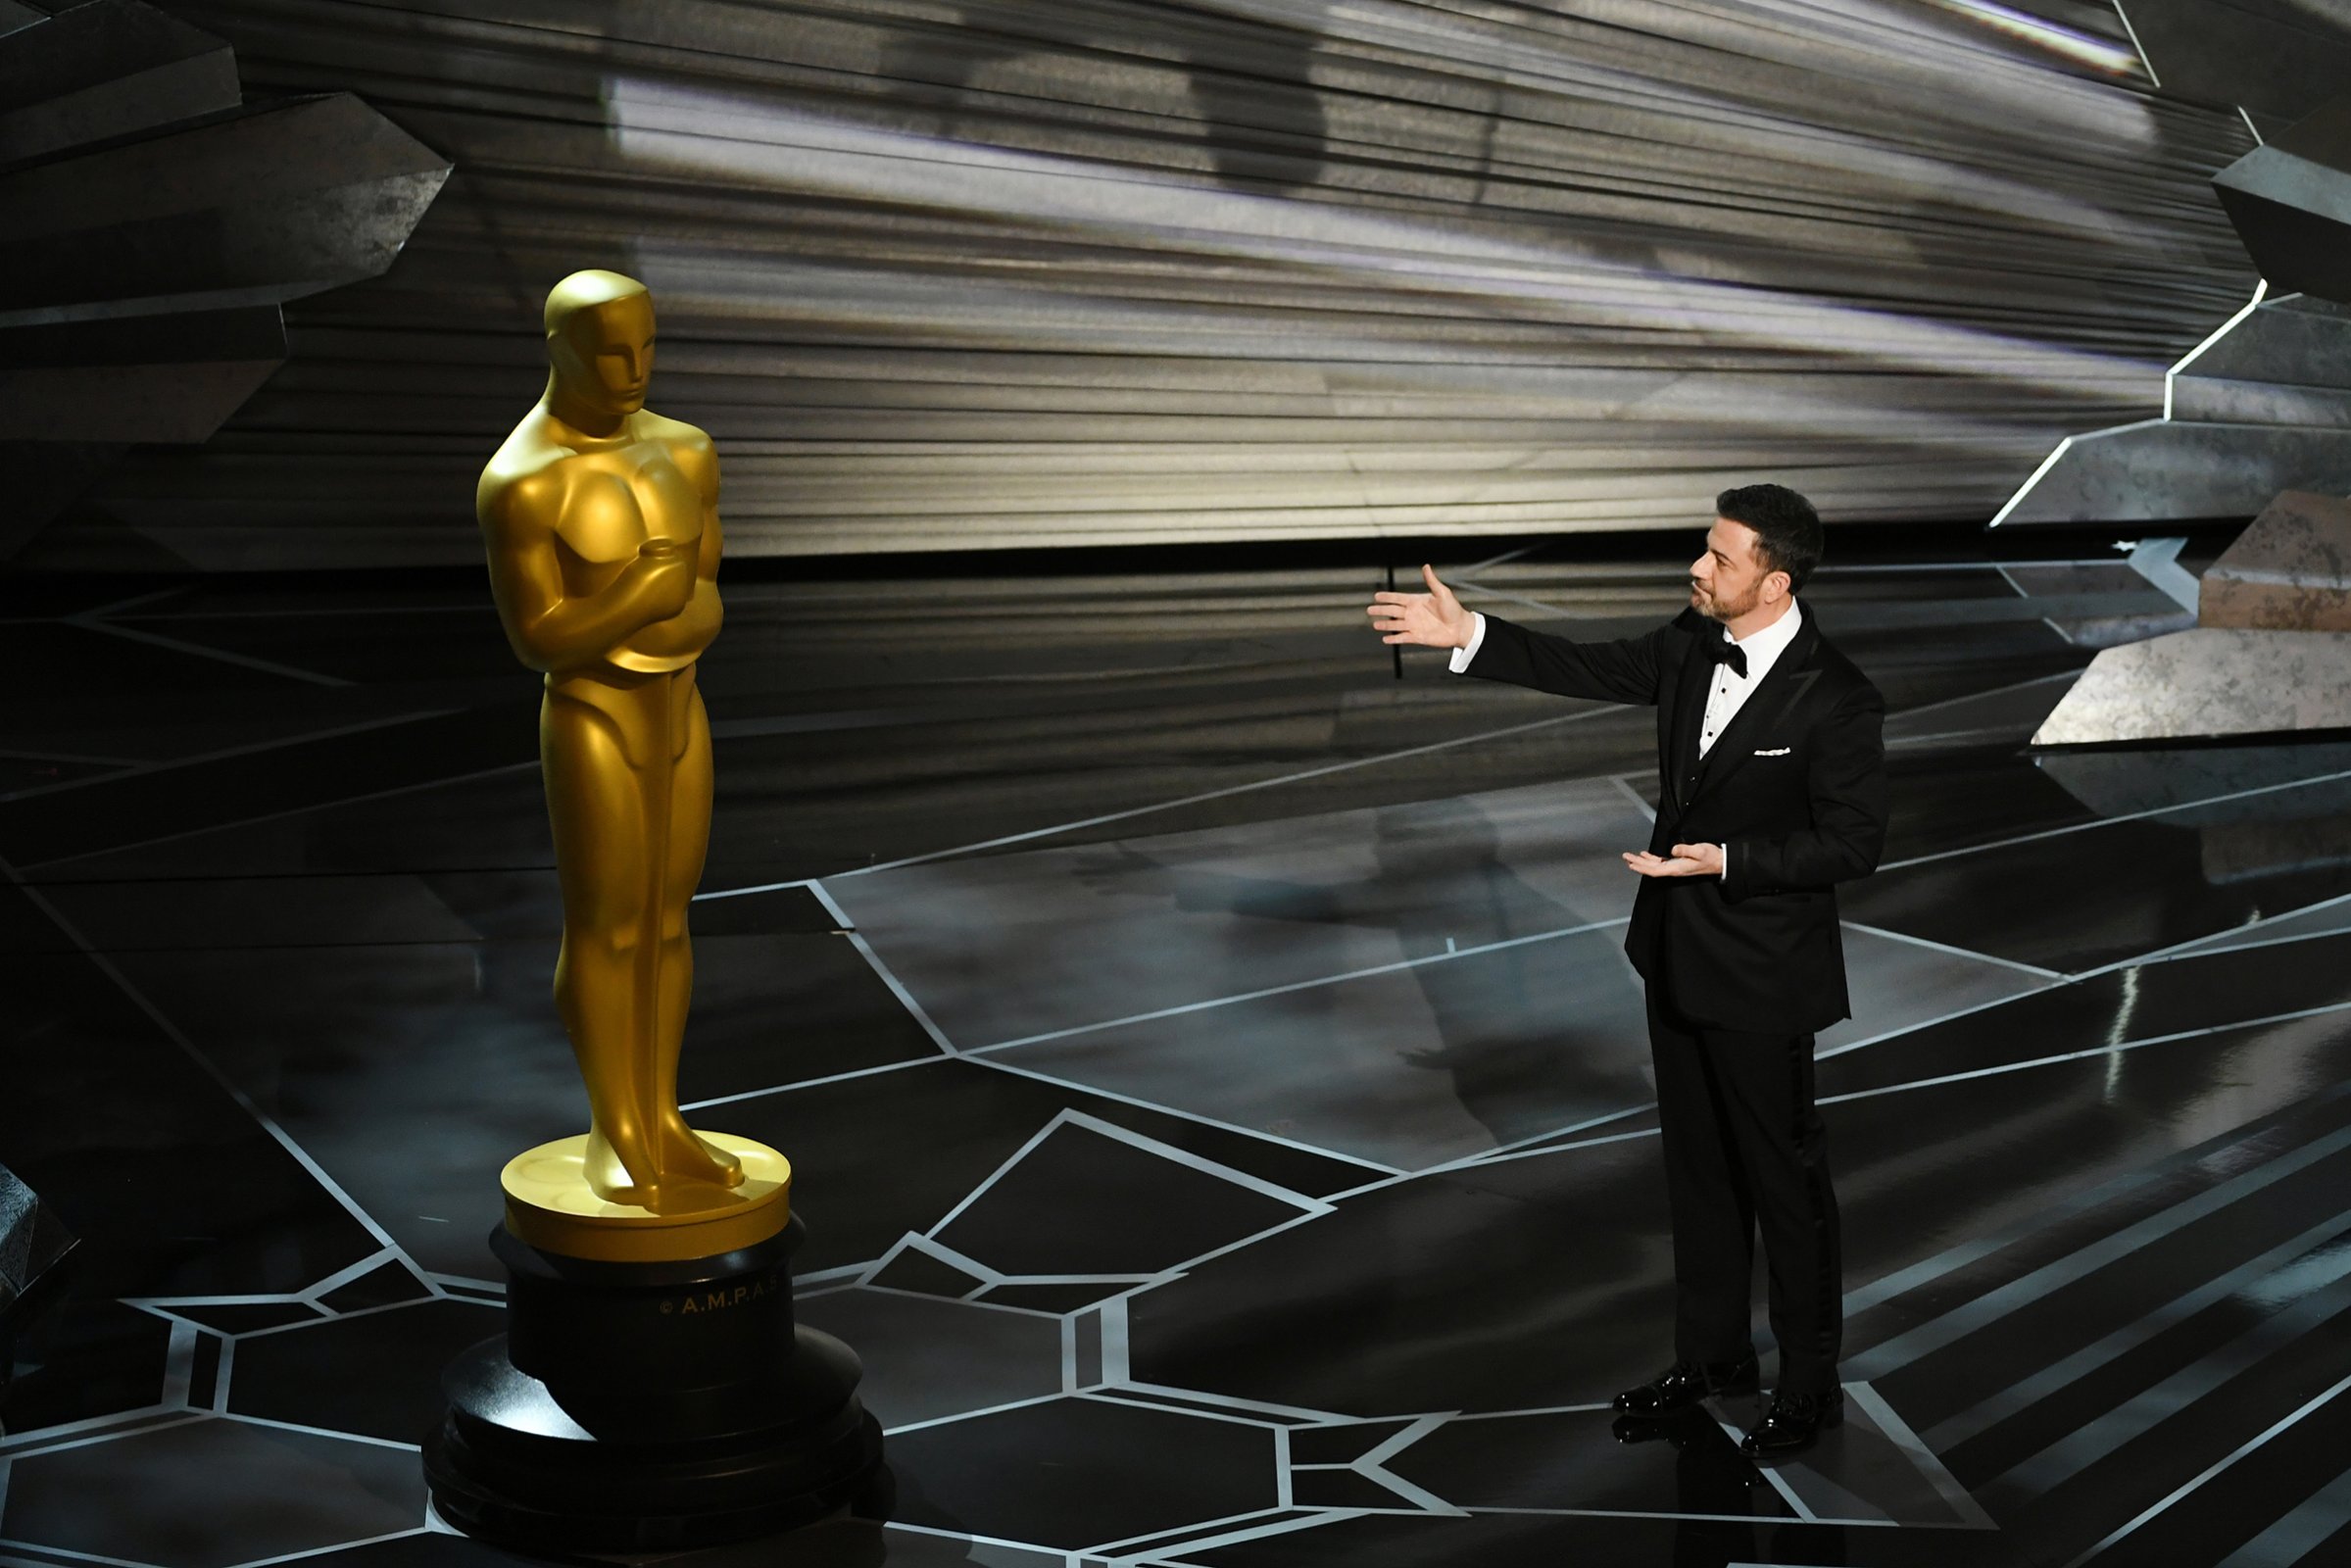 90th Annual Academy Awards - Show